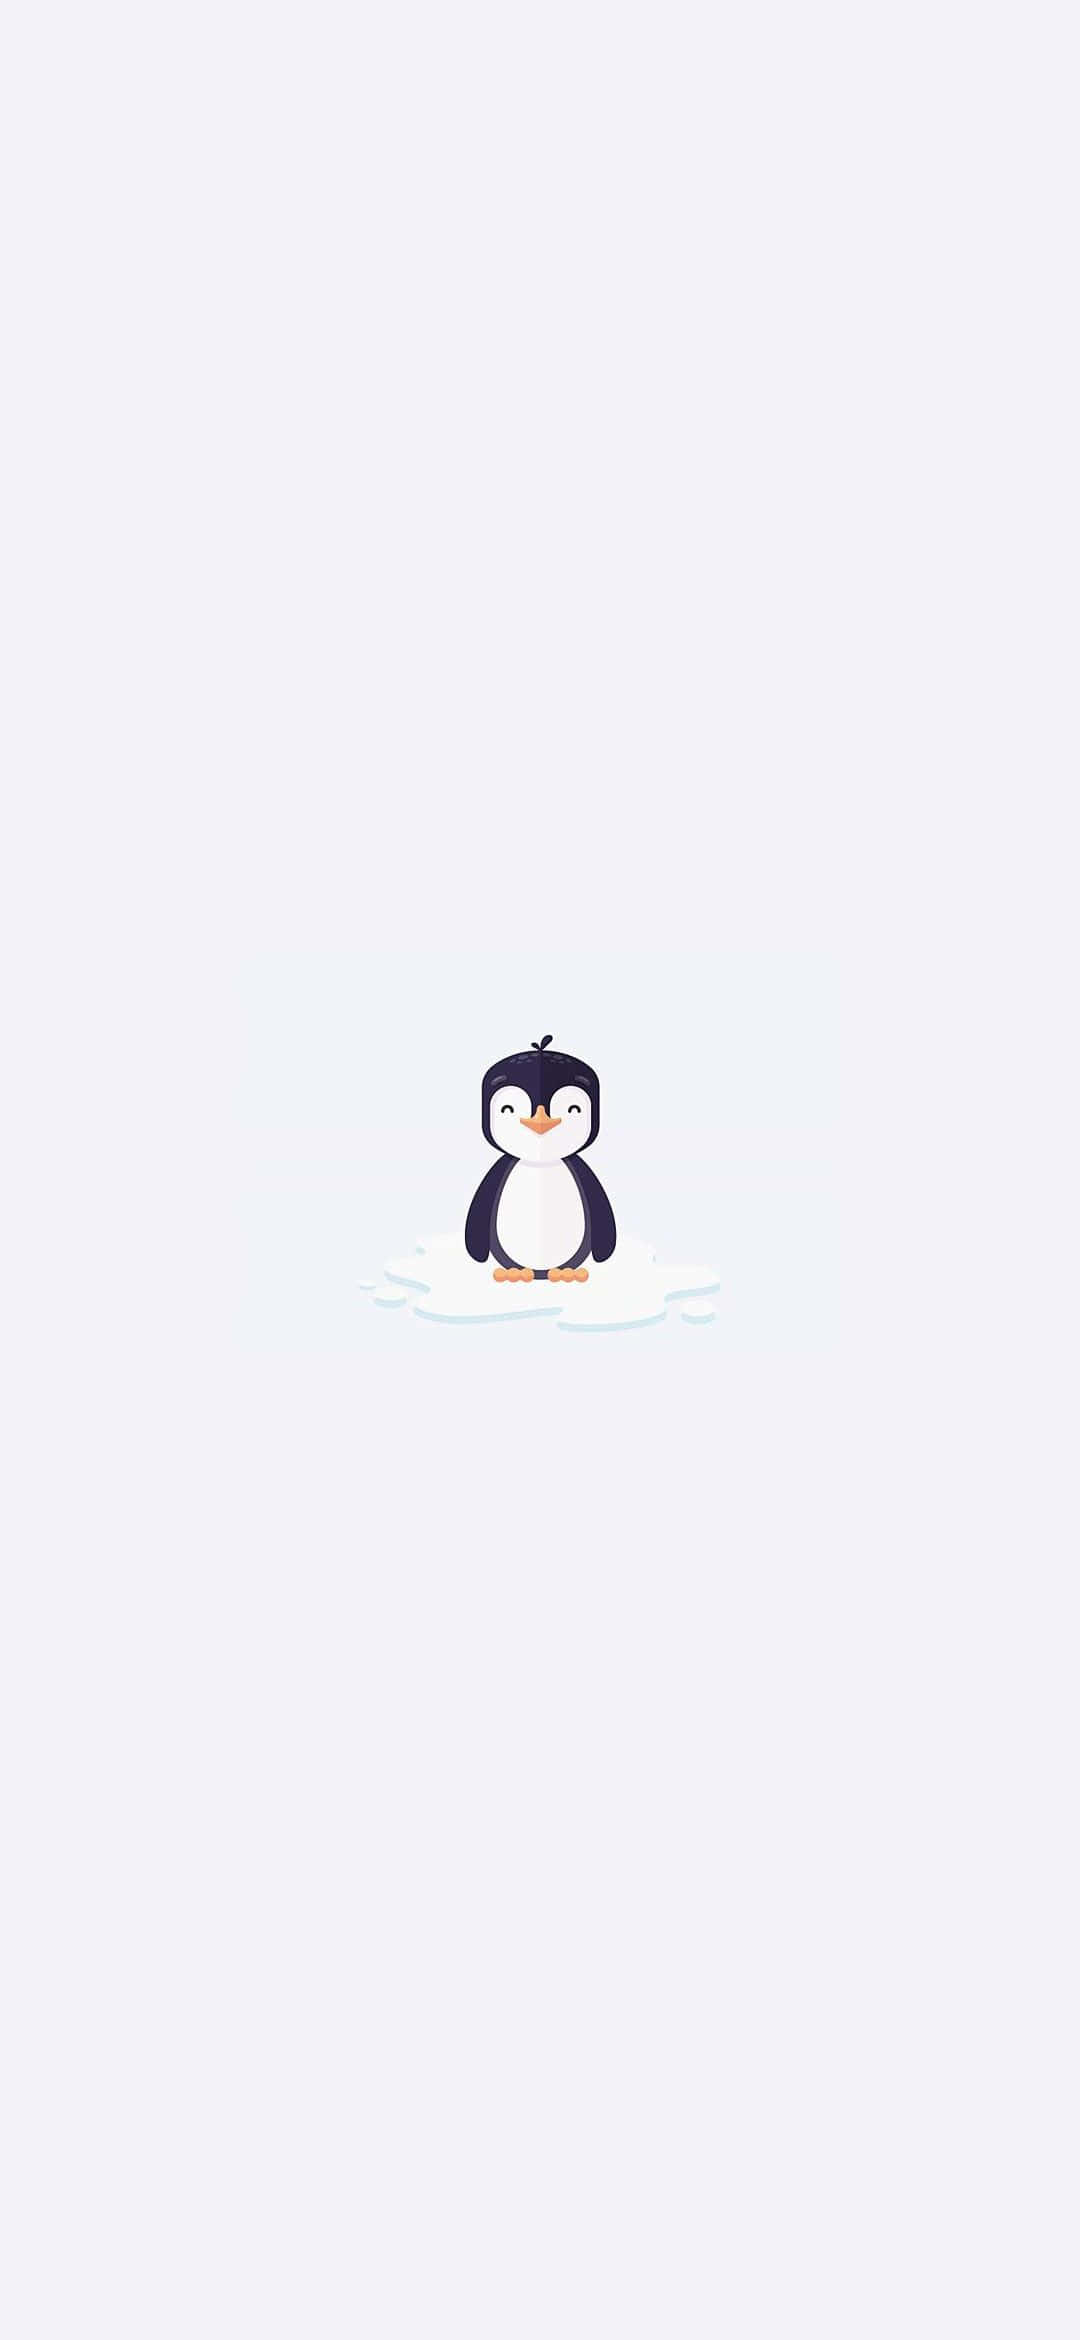 Niedlicherbaby-pinguin